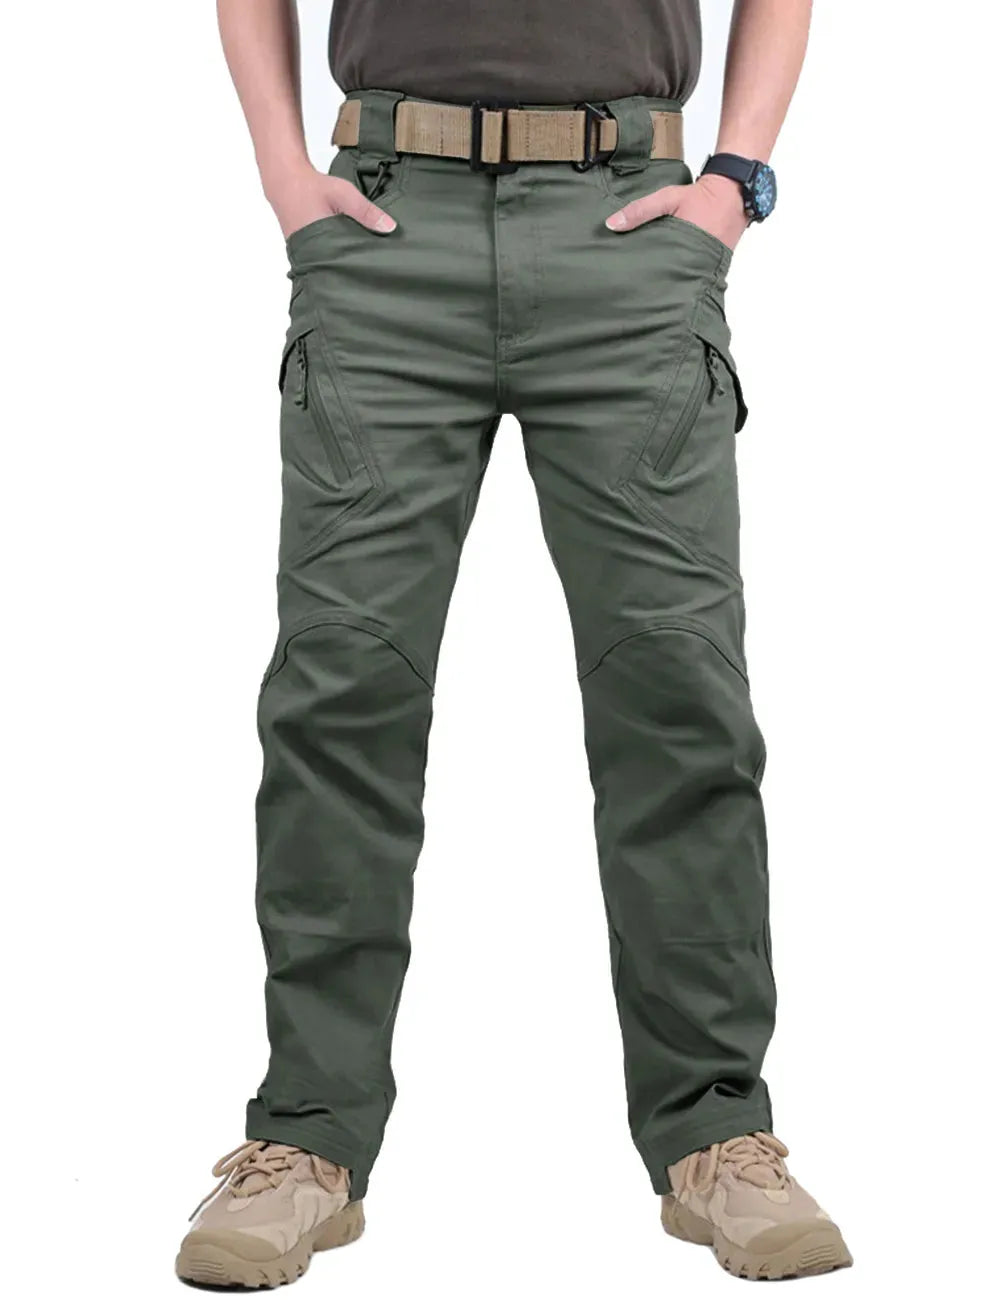 Men's Tactical Pants: Ultimate Outdoor Wear